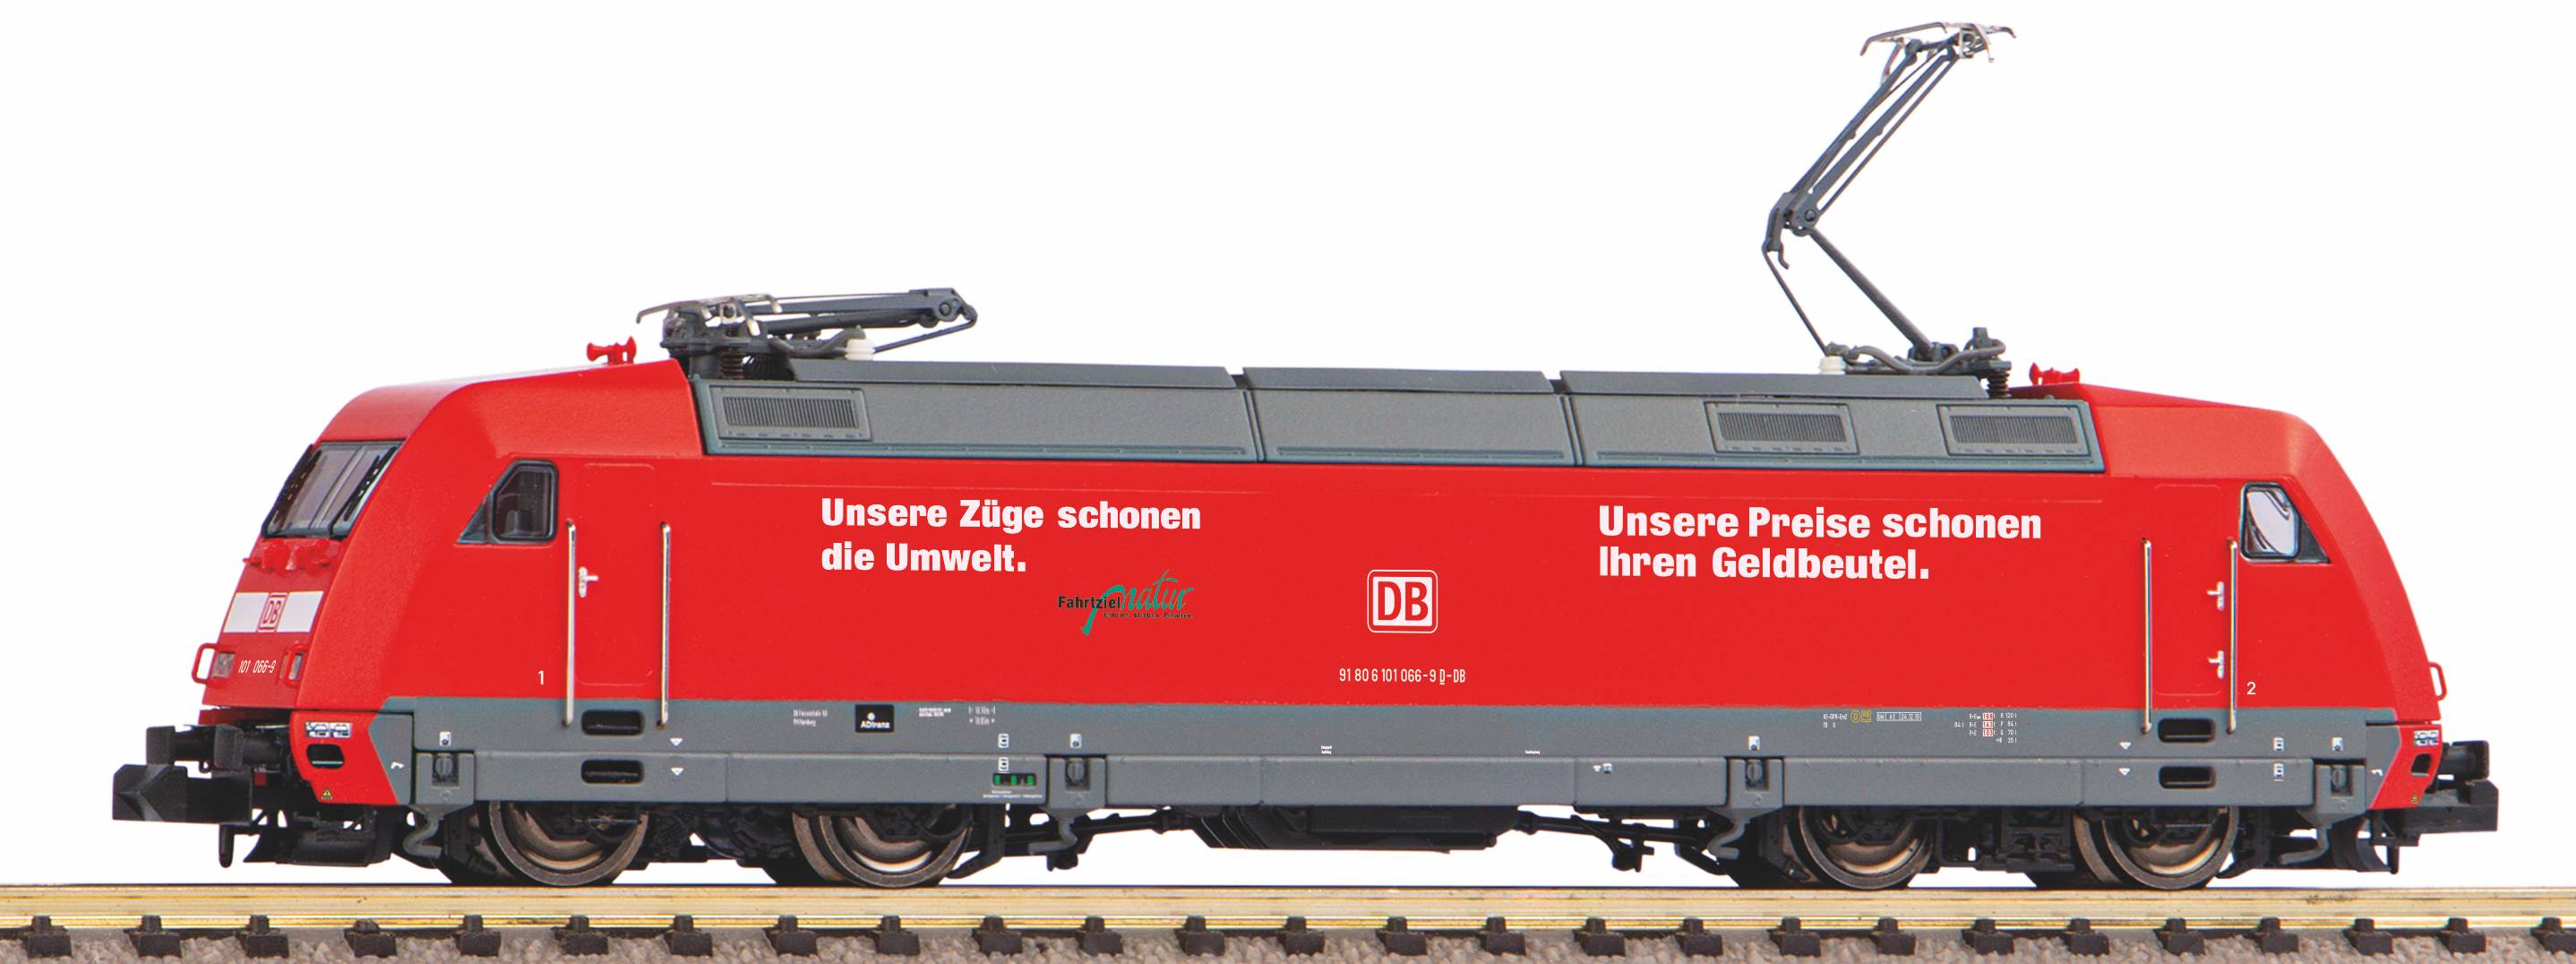 Piko 40564 N Elektrische locomotief BR 101 Unsere Preise DB AG